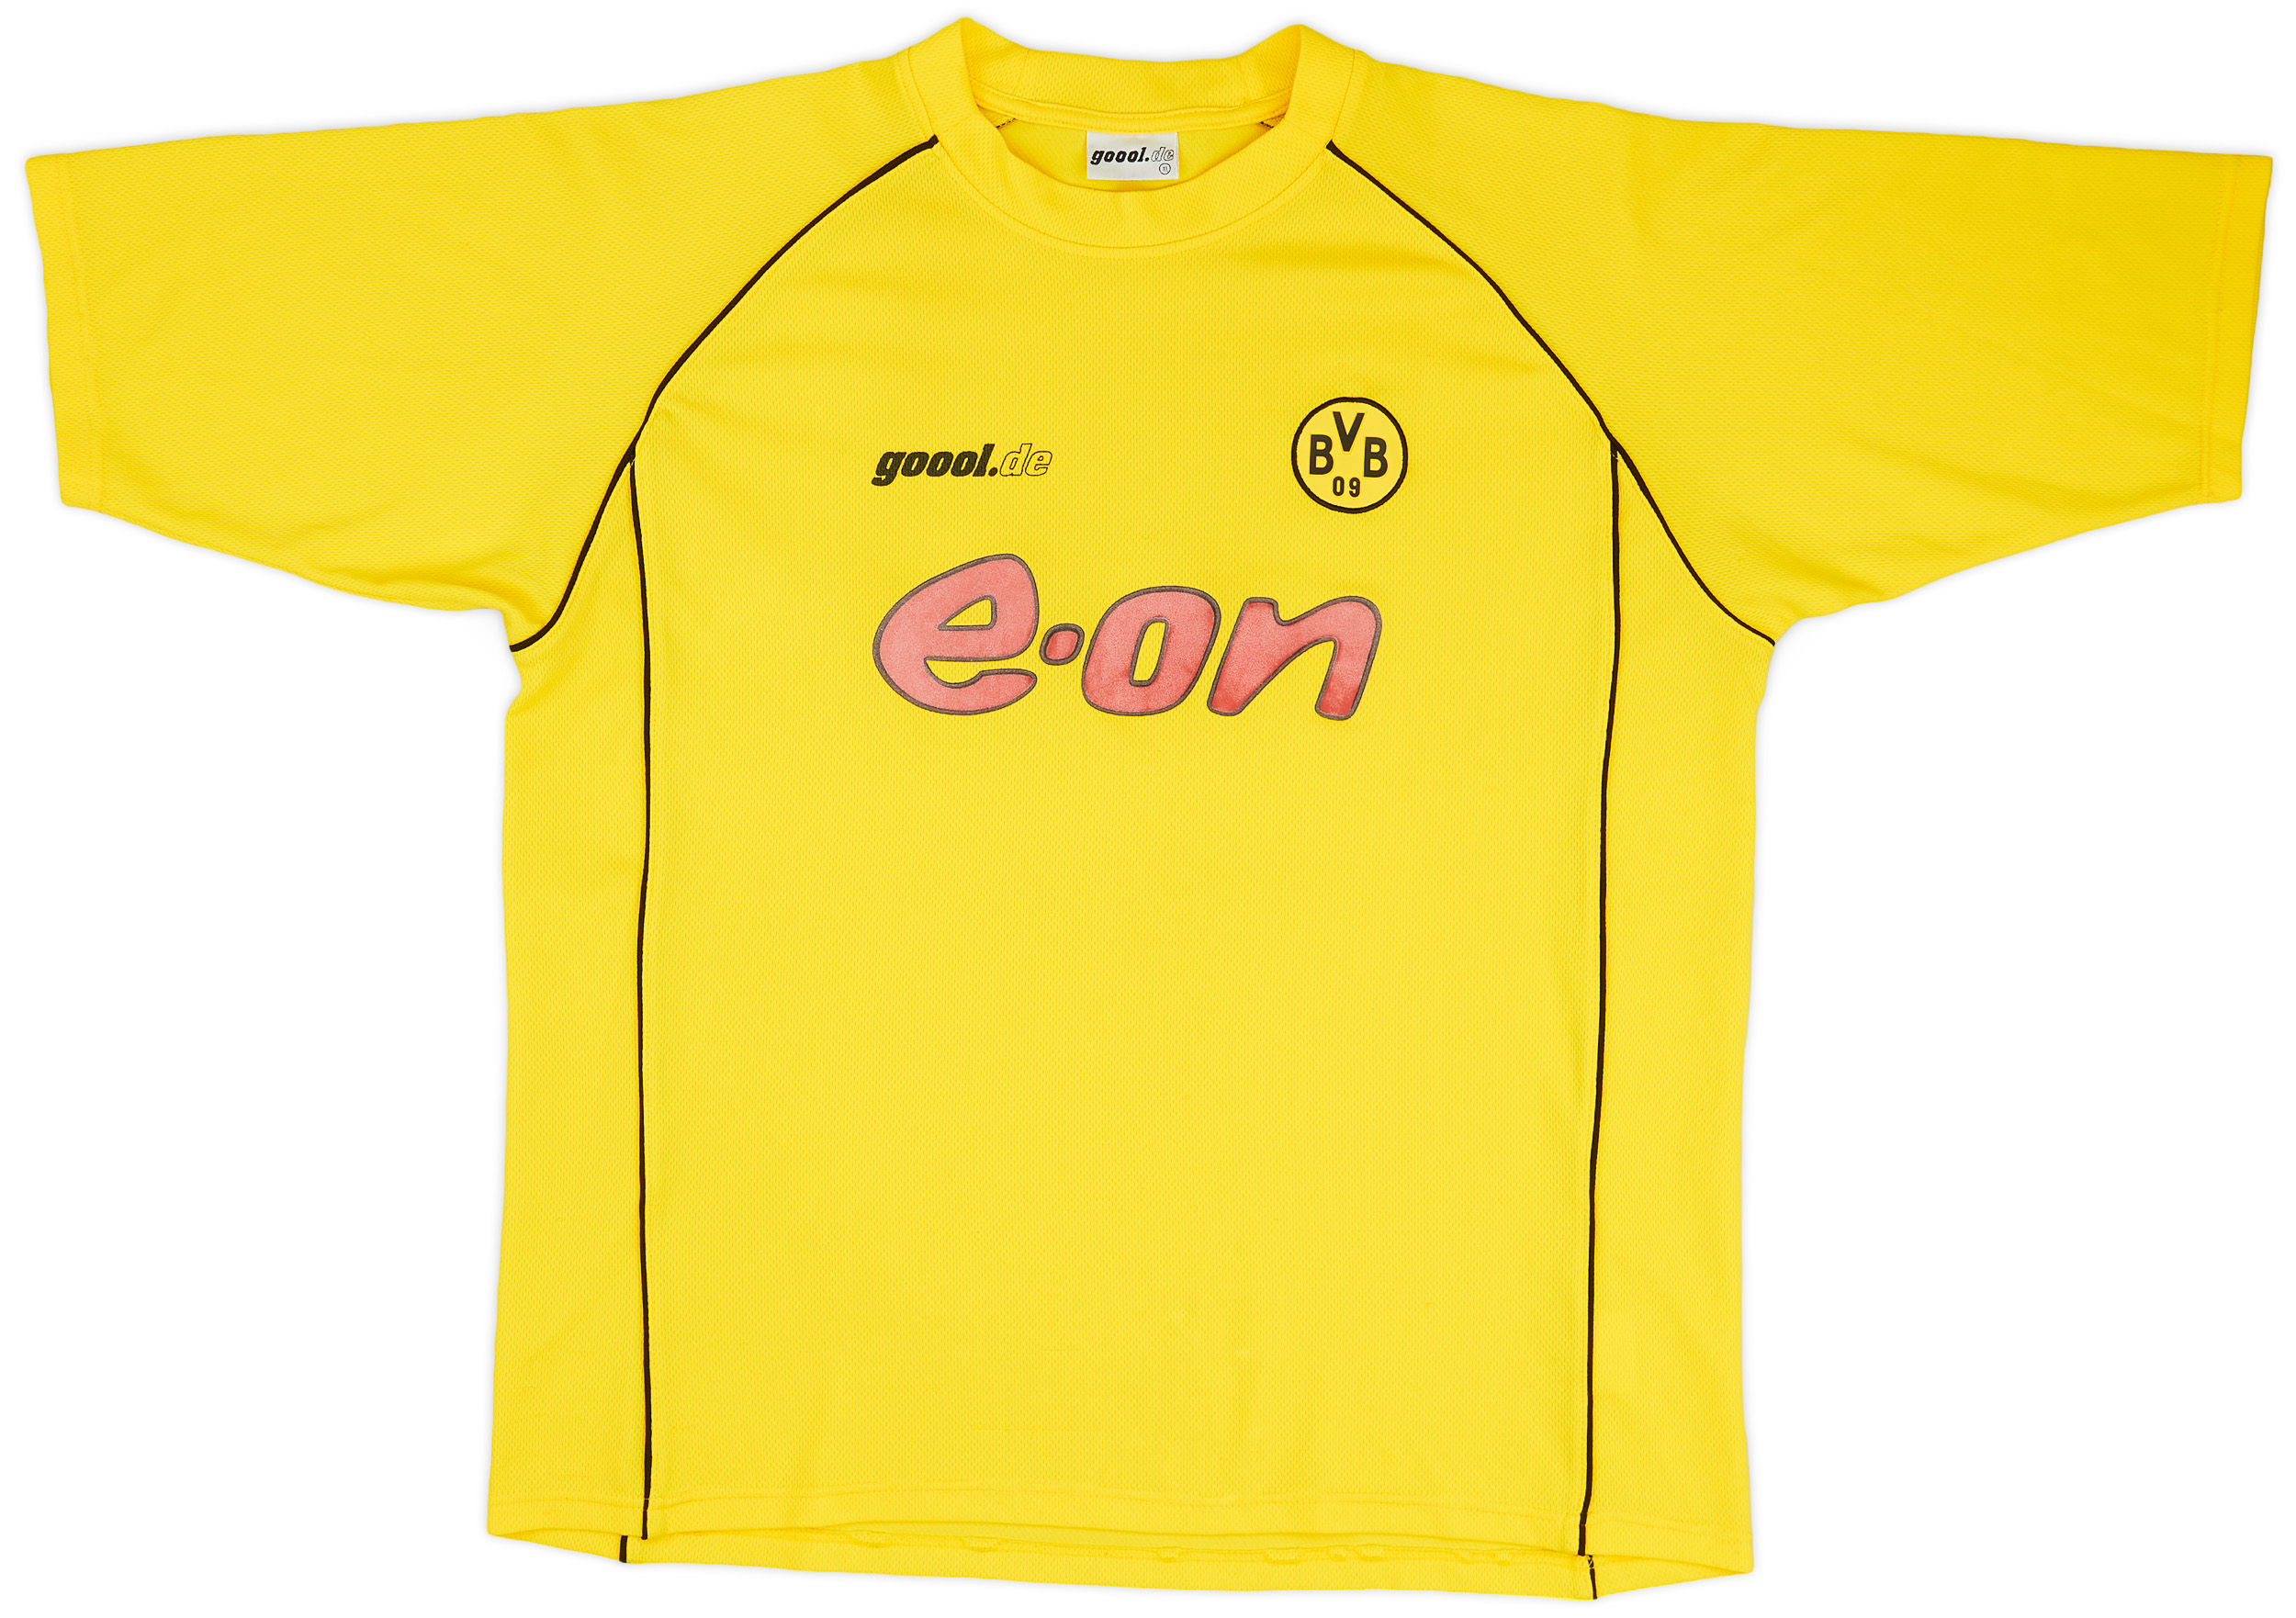 Retro Borussia Dortmund Shirt